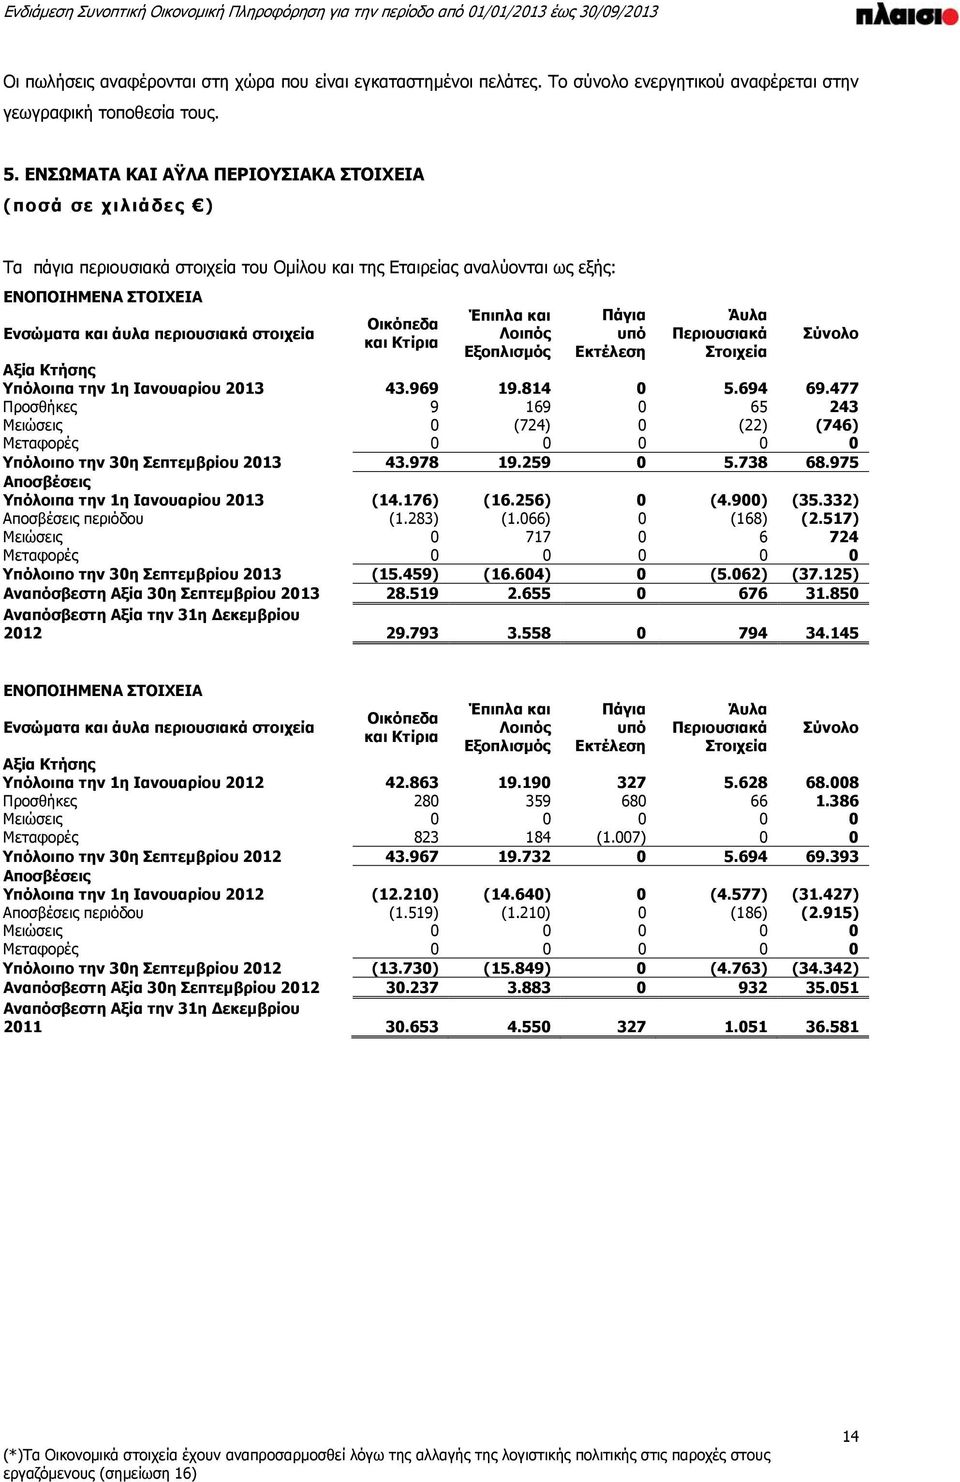 Έπιπλα και Λοιπός Εξοπλισμός Πάγια υπό Εκτέλεση Άυλα Περιουσιακά Στοιχεία Σύνολο Αξία Κτήσης Υπόλοιπα την 1η Ιανουαρίου 2013 43.969 19.814 0 5.694 69.